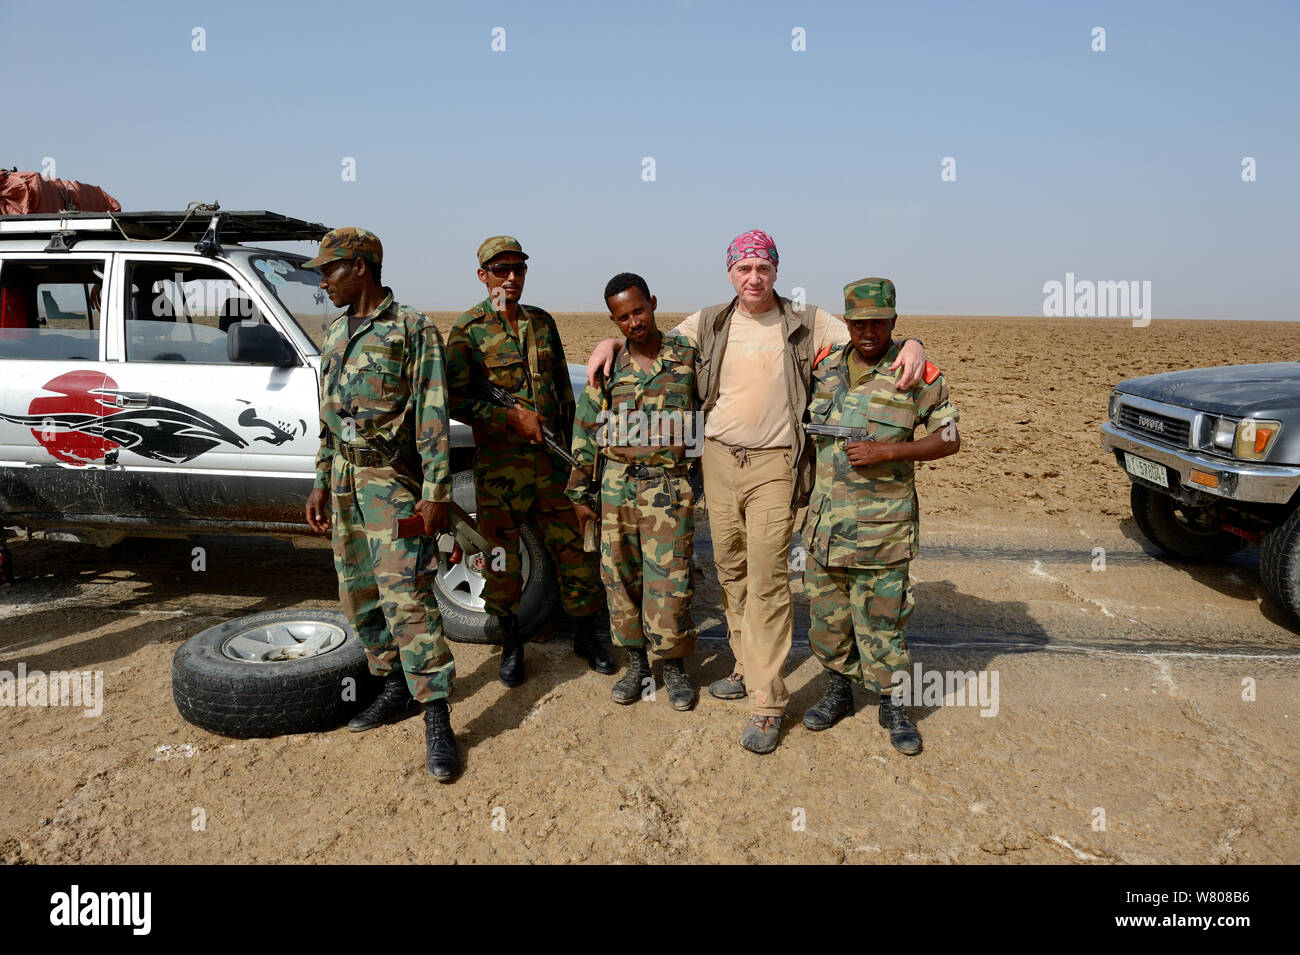 Fotograf Eric Baccega in Salz Wüste mit militärischen Eskorte erforderlich, in diese Region zu reisen. Danakil Depression. Äthiopien, März 2015. Stockfoto